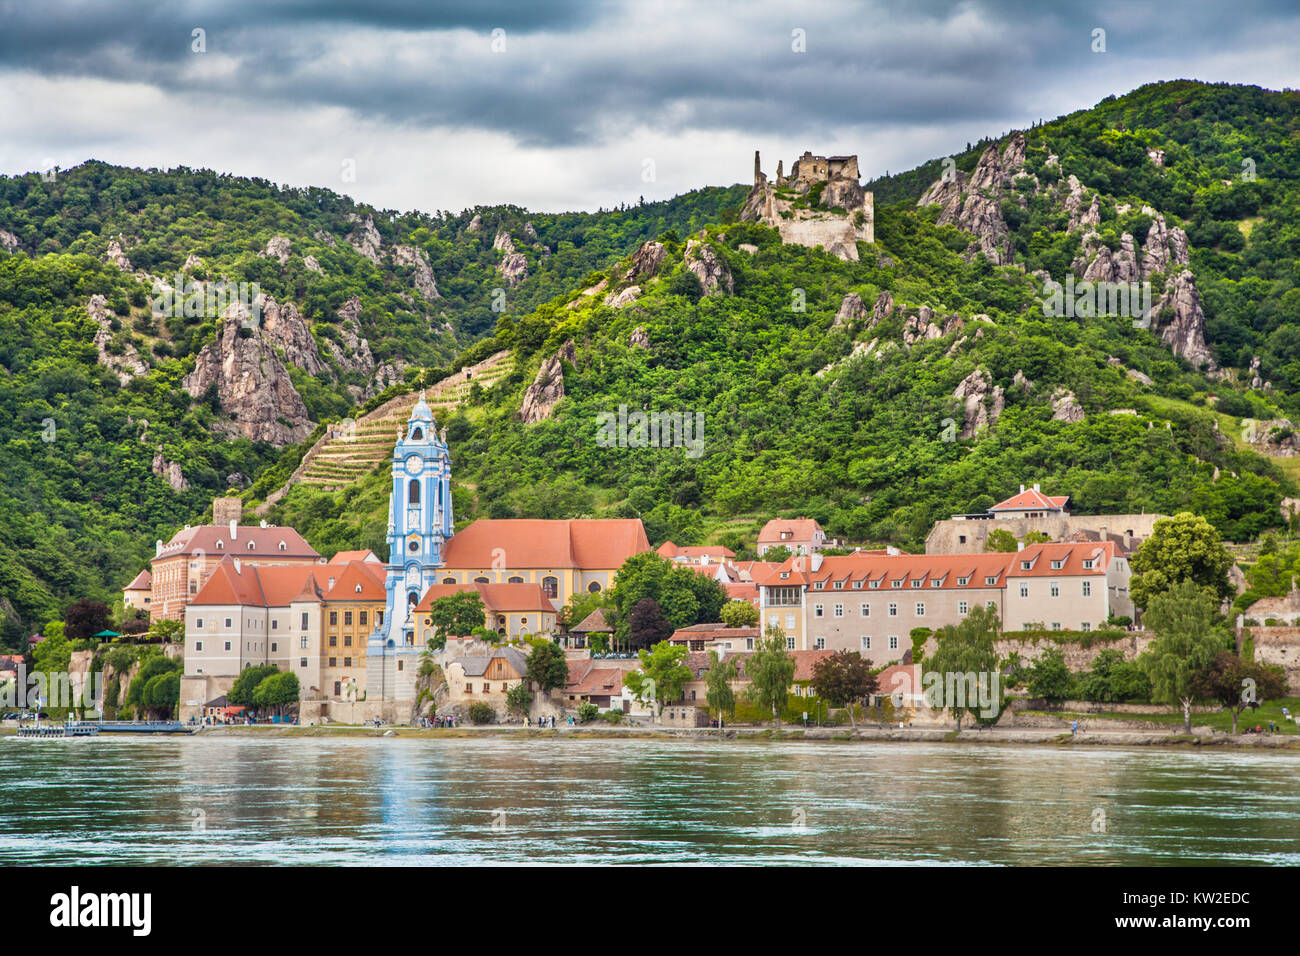 Bellissimo paesaggio con la città di Durnstein e fiume del Danubio nella valle di Wachau, Austria inferiore Foto Stock